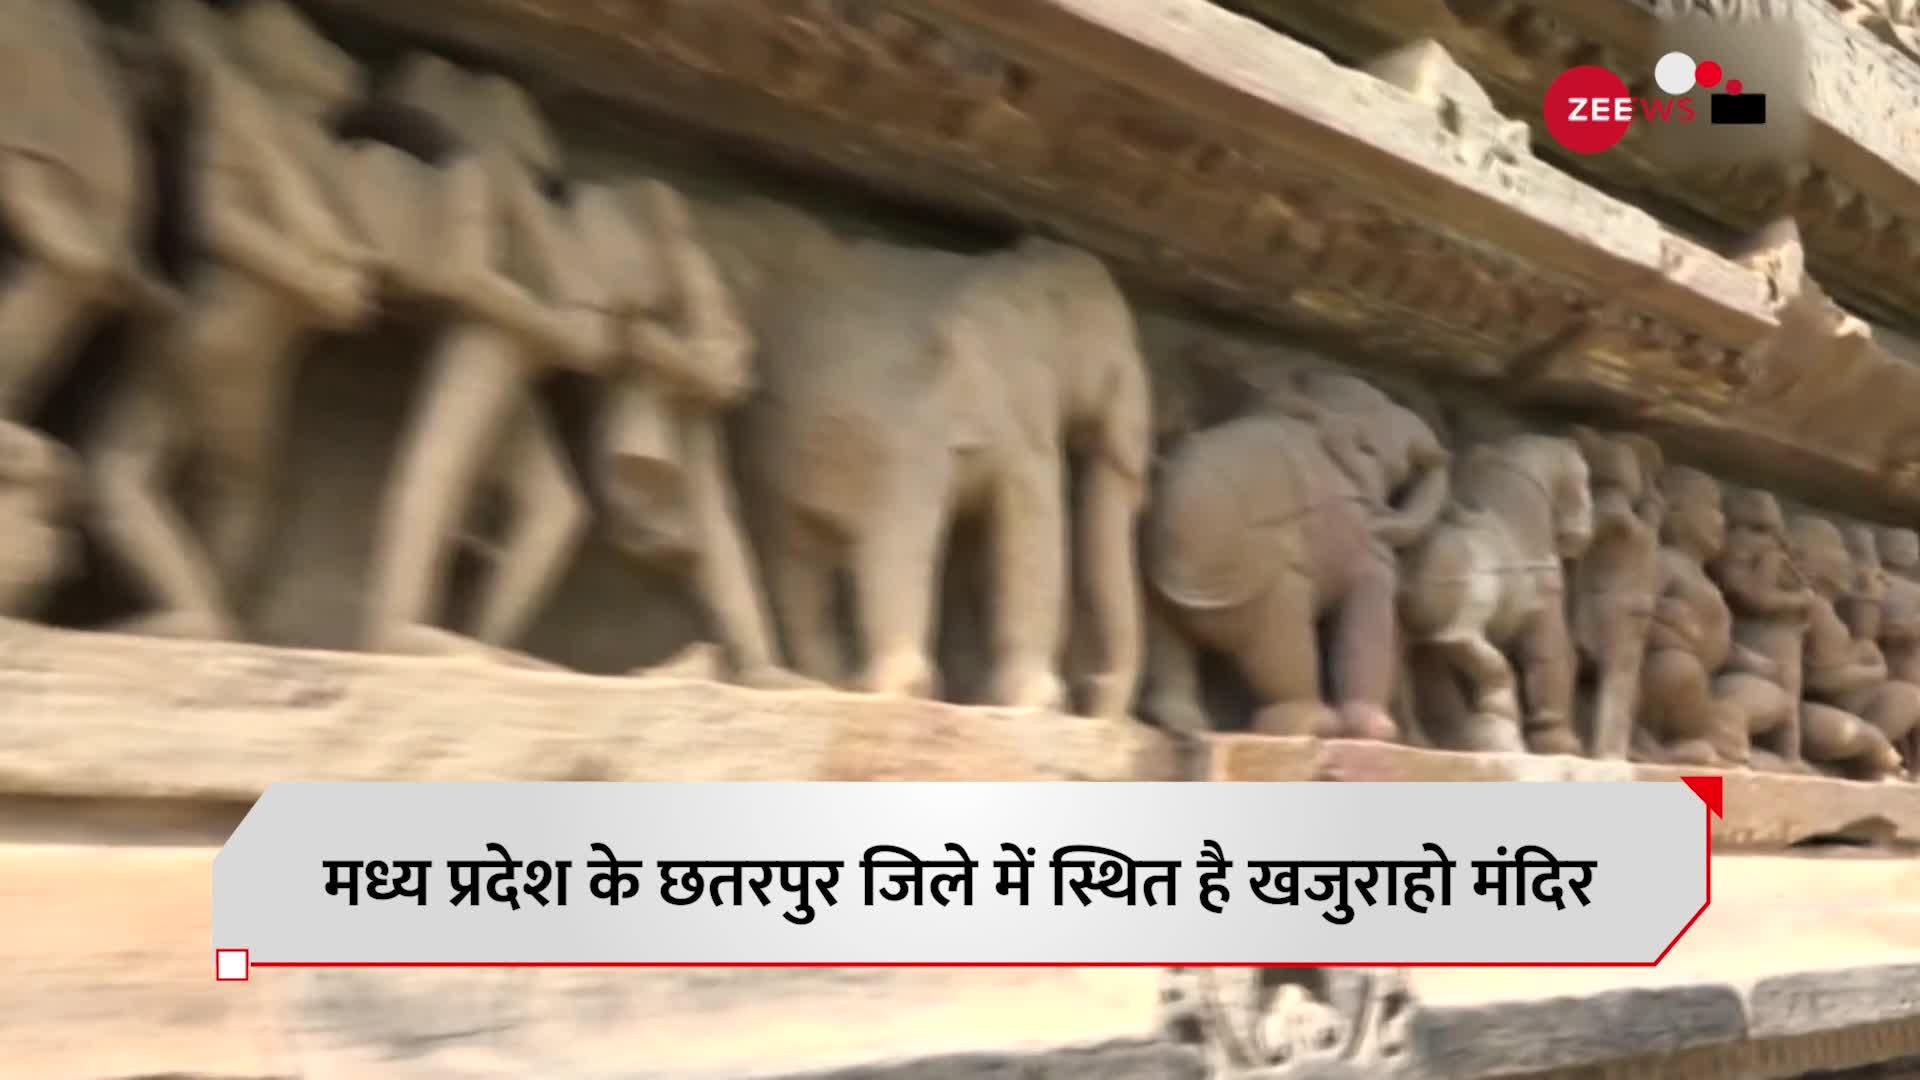 Khajuraho Temple: क्या है मध्य प्रदेश के खजुराहो मंदिर का इतिहास?